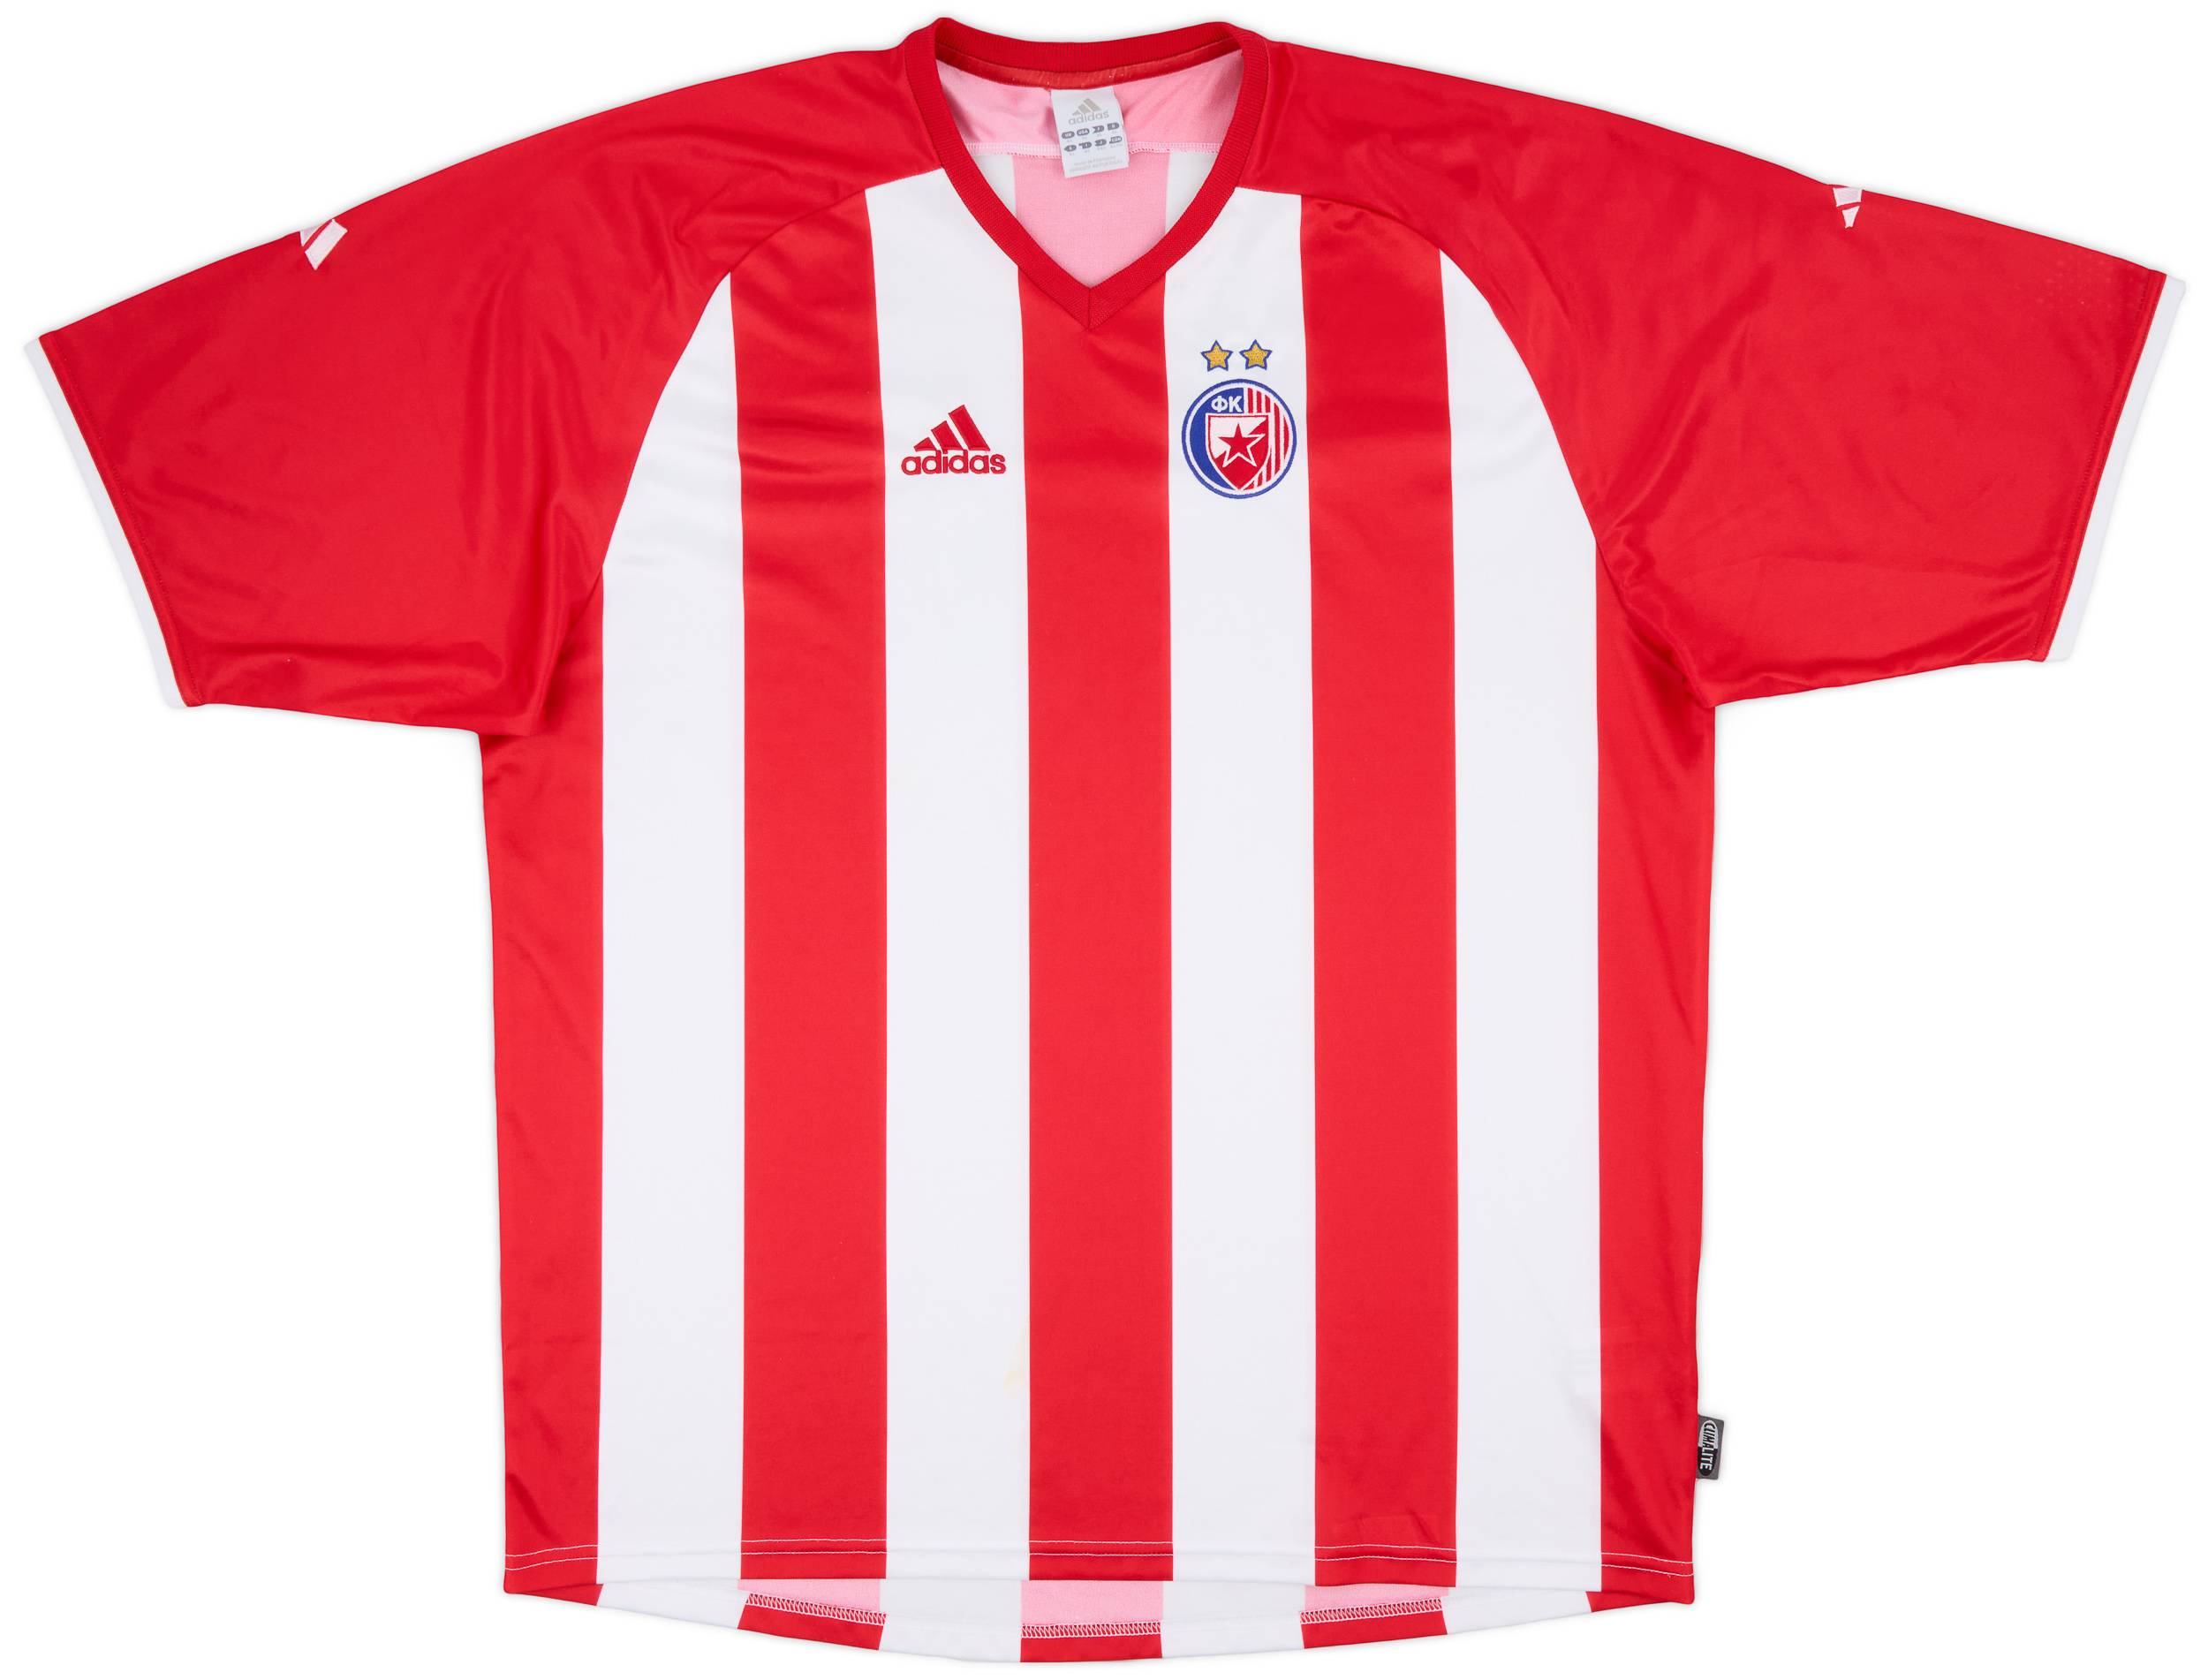 2004-05 Red Star Belgrade Home Shirt - 8/10 - (XL)